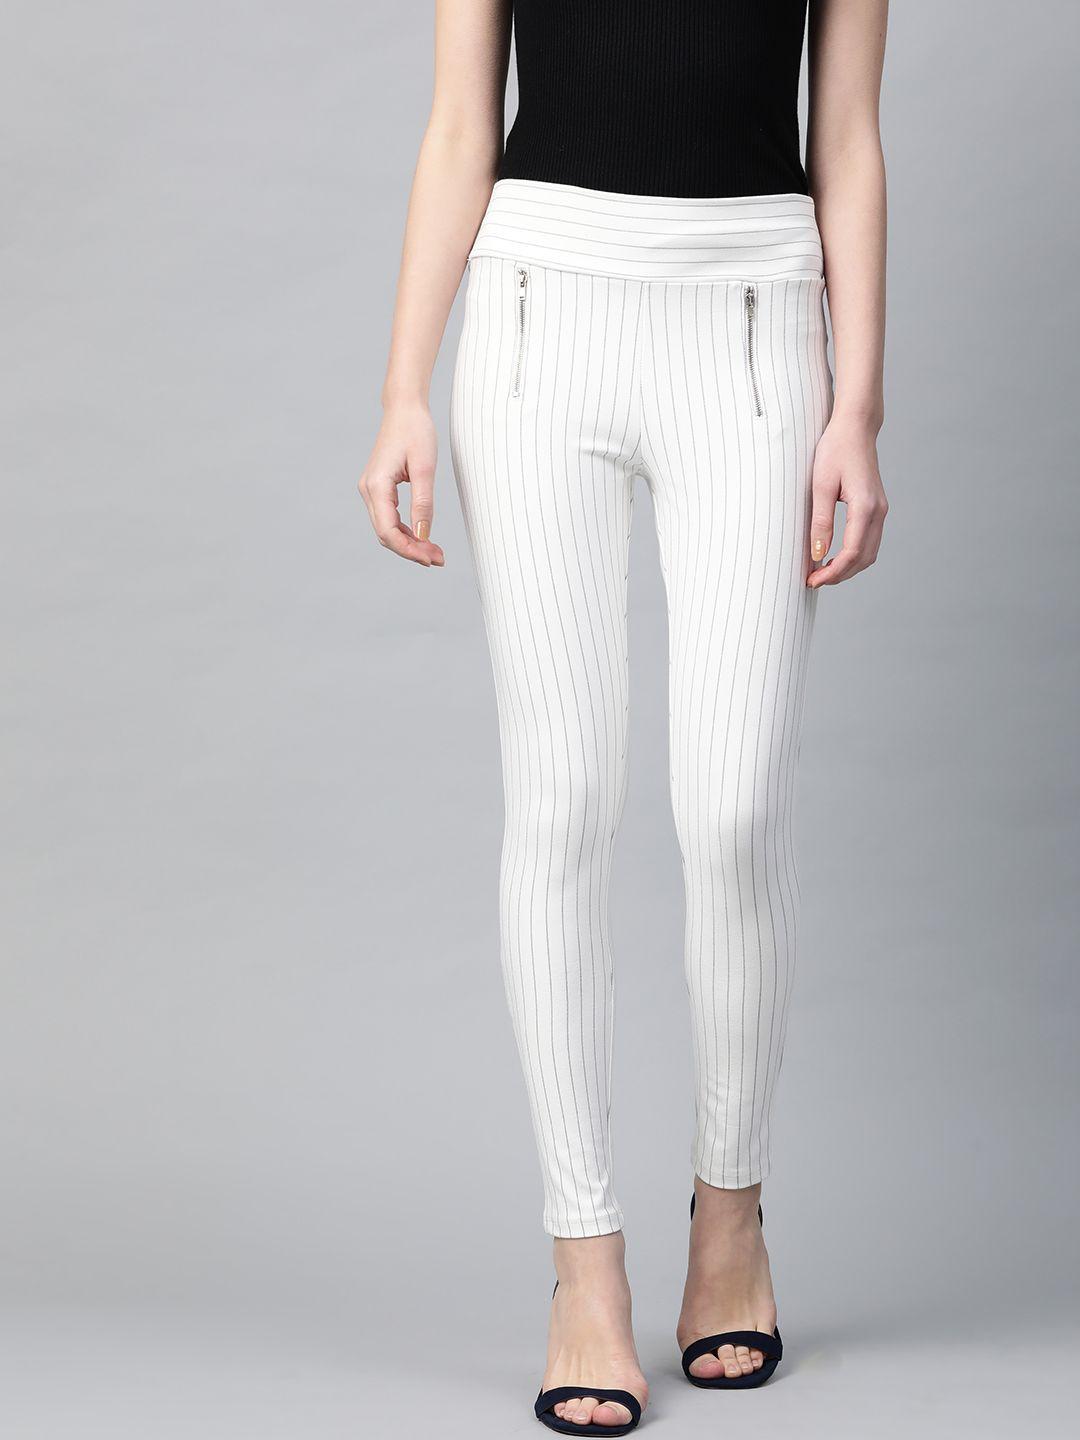 sassafras women white & navy blue slim fit striped treggings